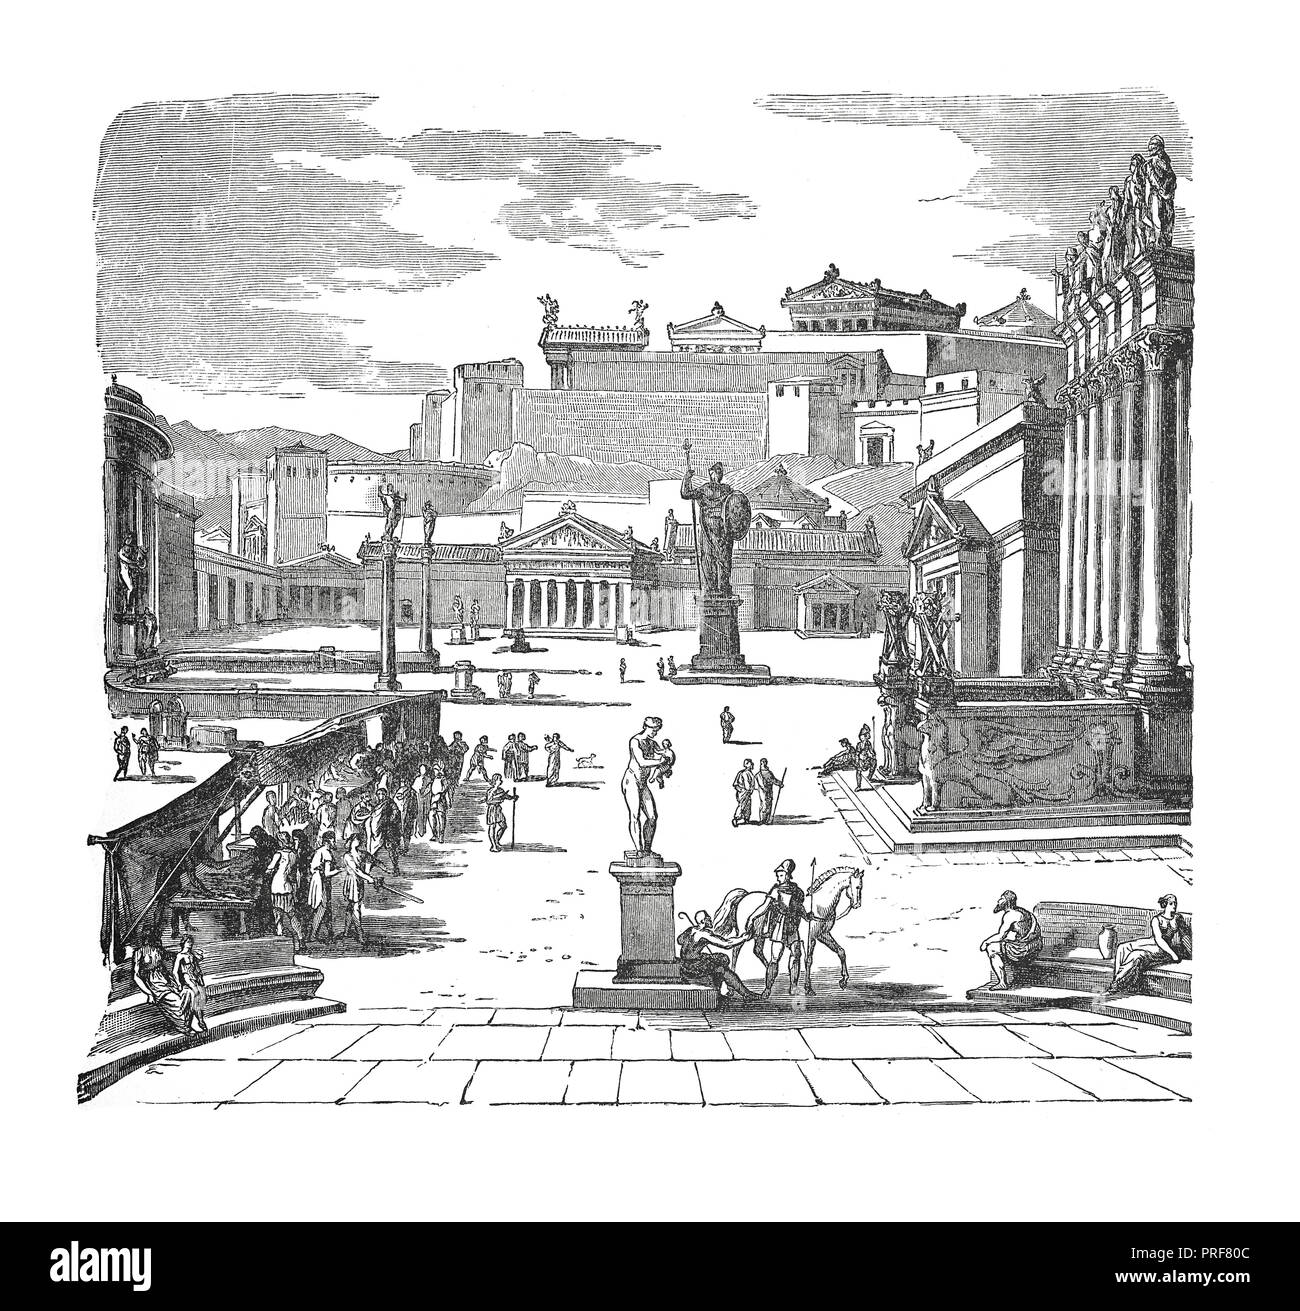 Dessin original de la place du marché de Sparte - (restauration, dessiné par J. Hoffmann). Publié dans histoire illustrée des grandes nations : Banque D'Images